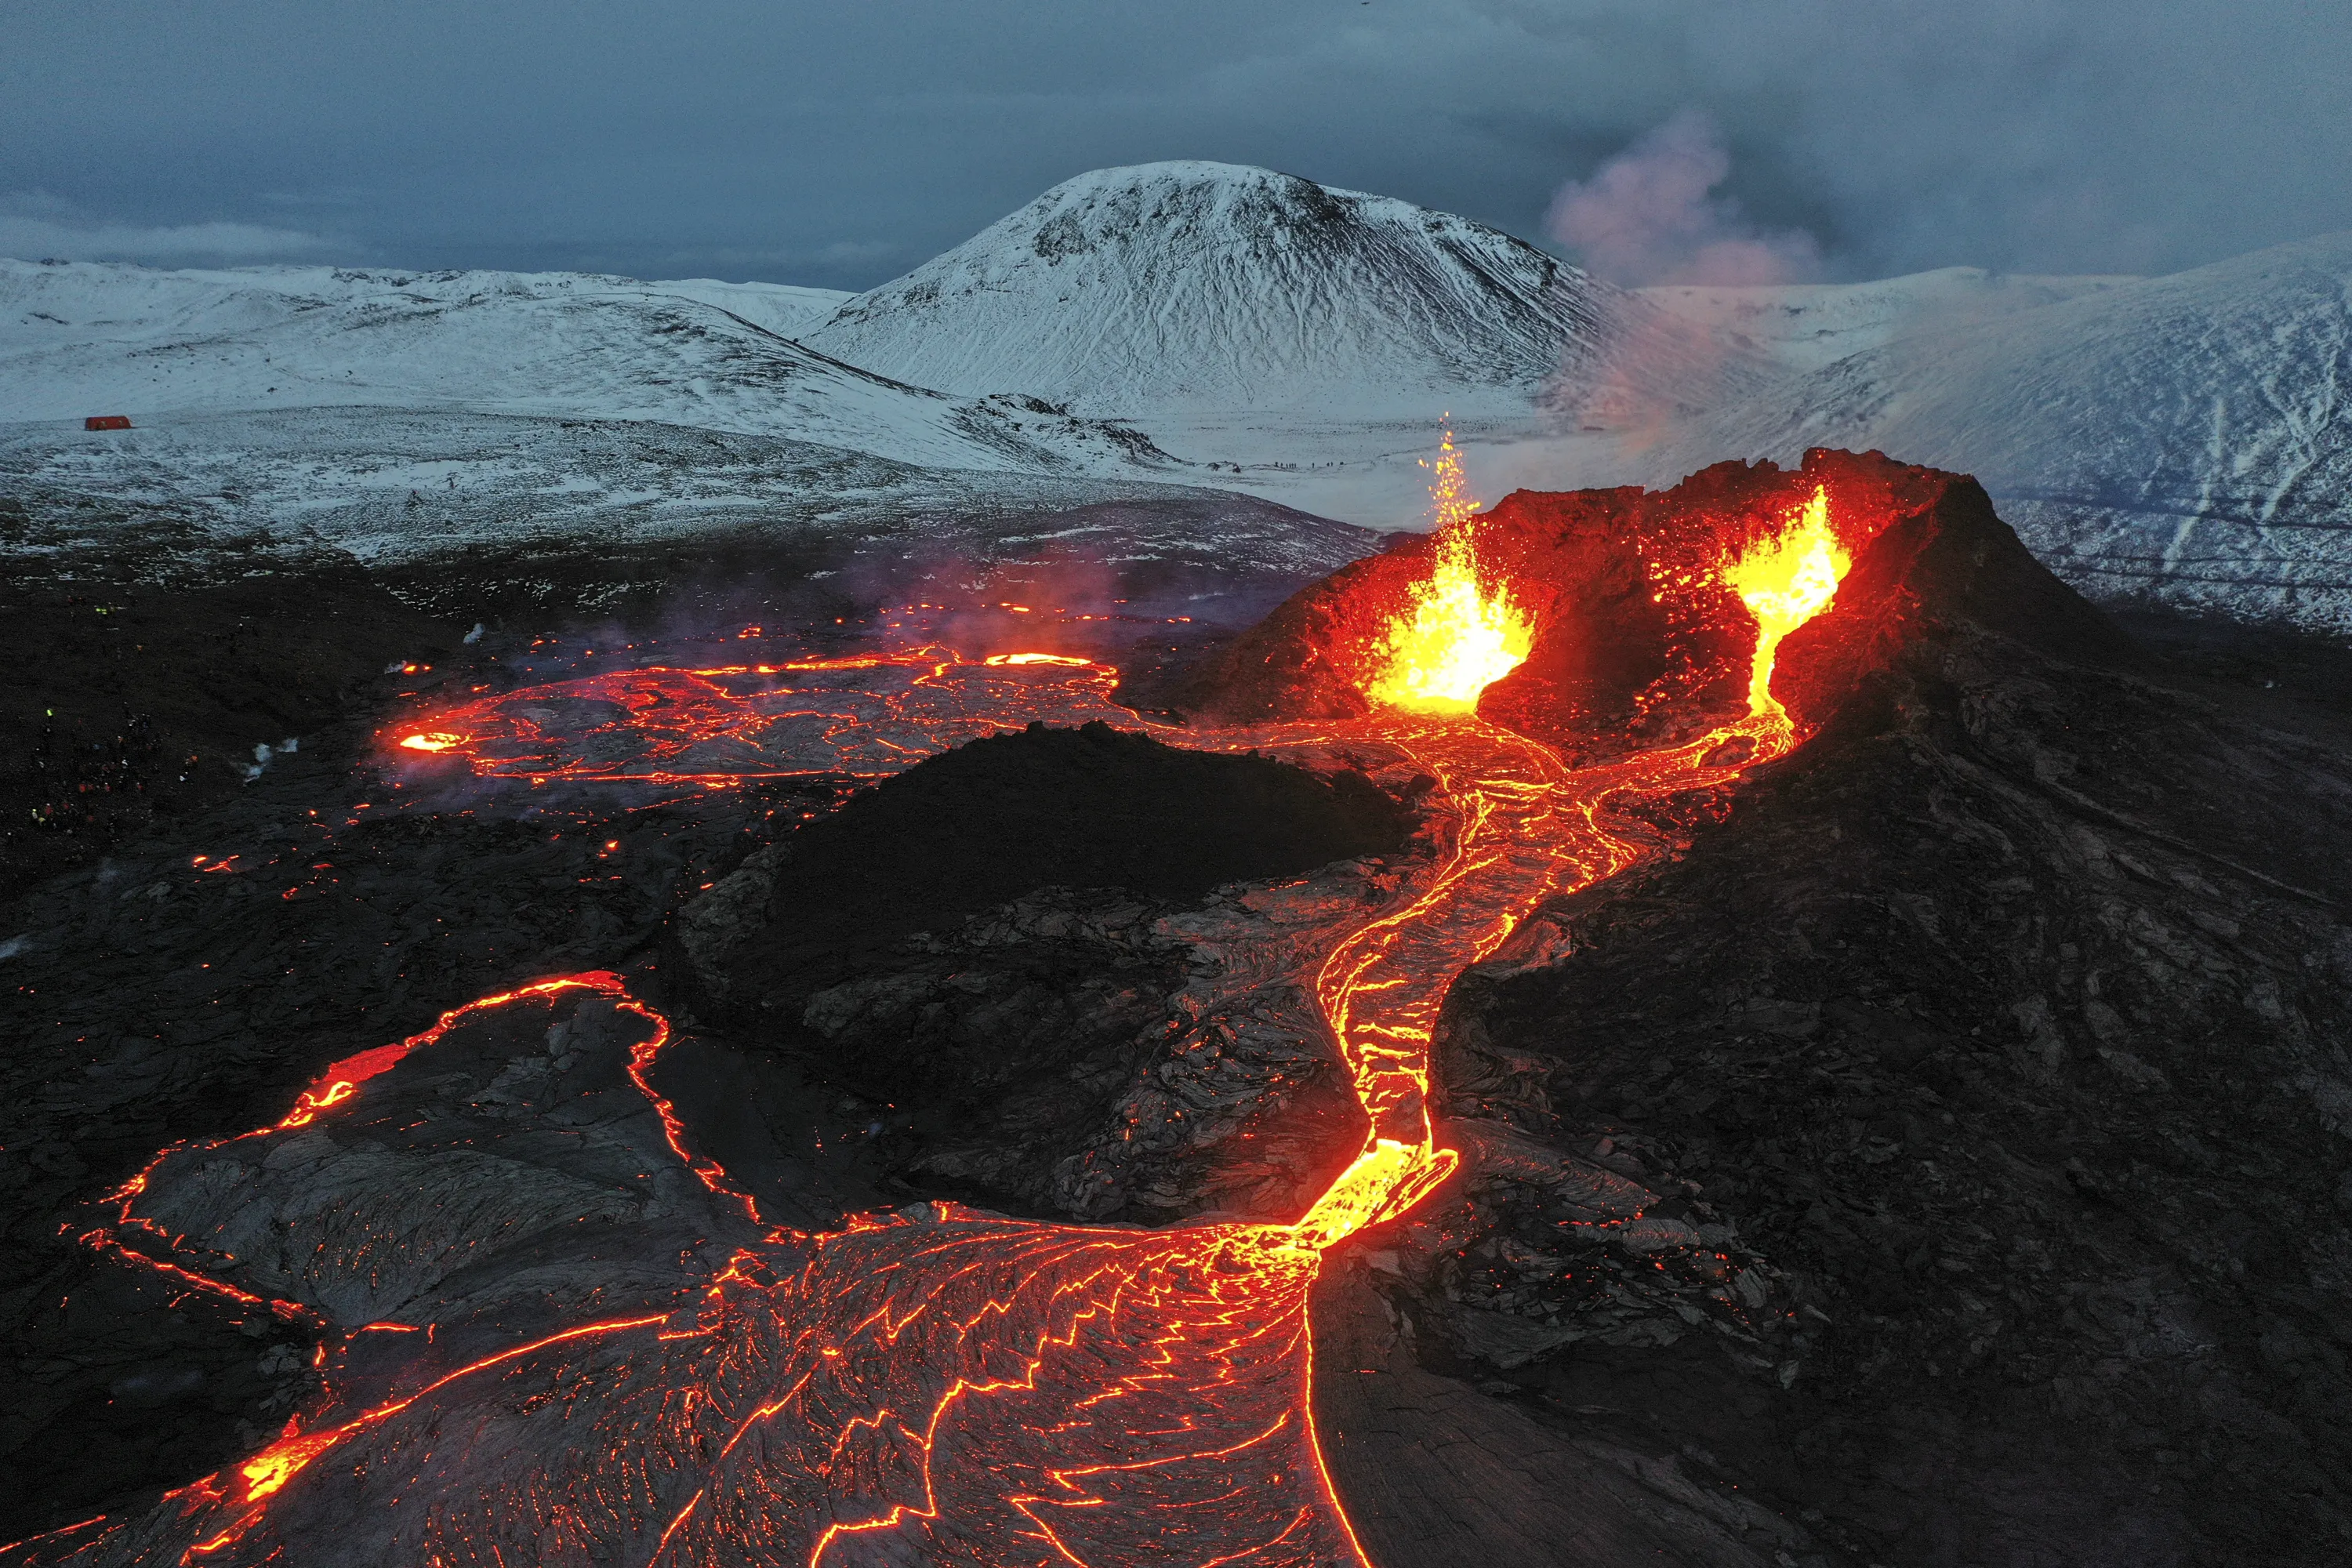 1 пример извержения вулкана. Извержение вулкана эйяфьядлайёкюдль 2010. Вулкан в Исландии Эйяфьятлайокудль. Извержение вулкана в Исландии 2010. Вулкан Исландии Эйяфьятлайокудль 2010.